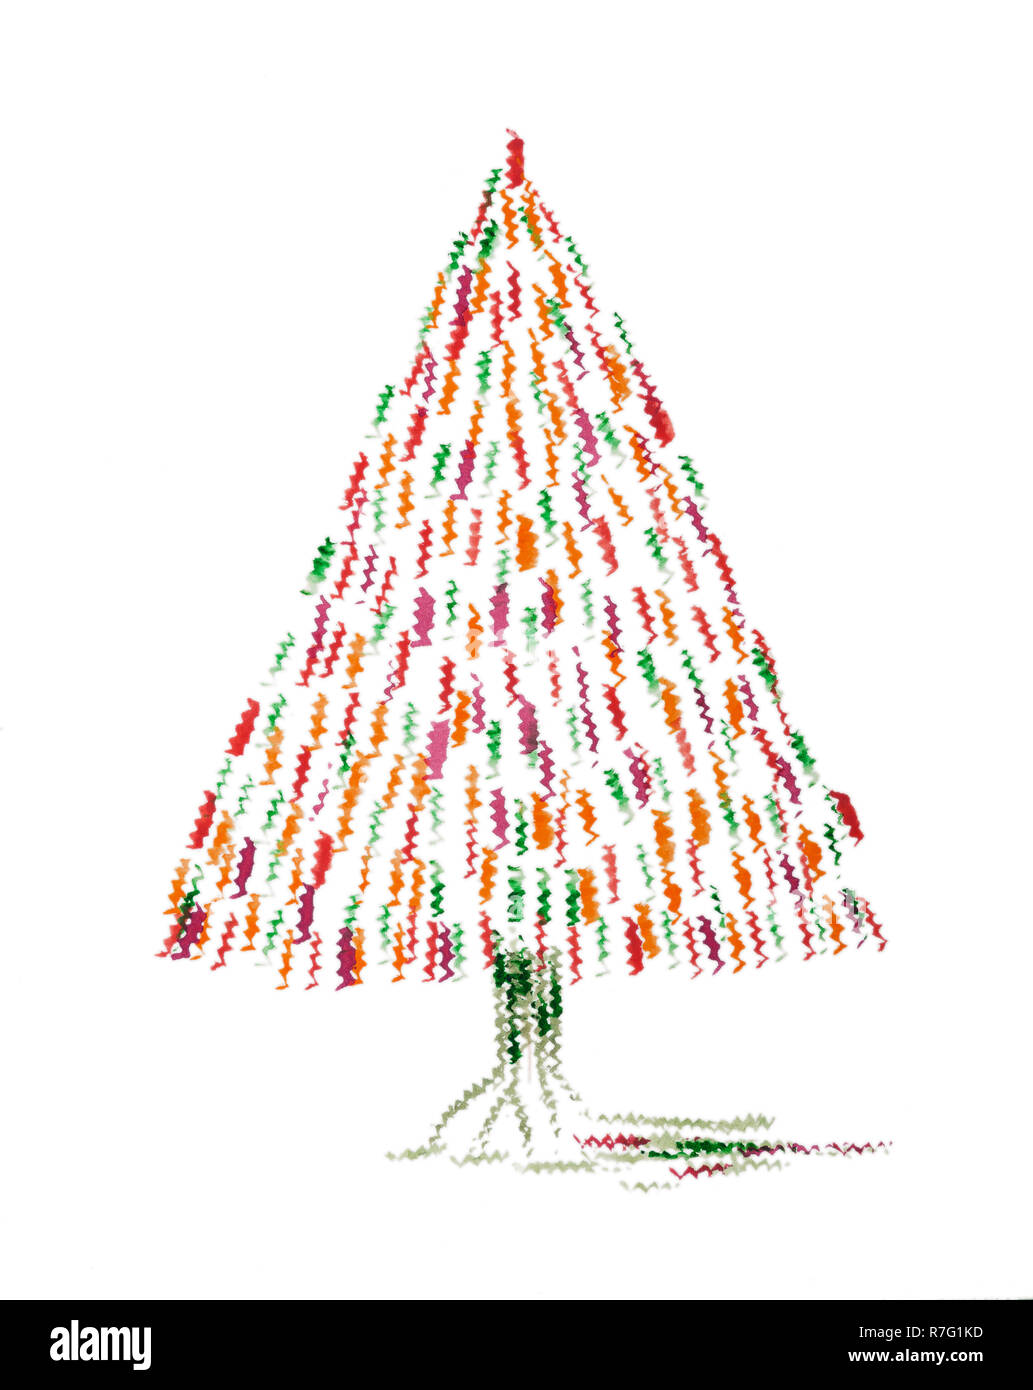 Arbre de Noël avec design rouge et orange. La technique du badigeonnage près des bords donne un effet de flou en raison de la modification de la rugosité de la Banque D'Images